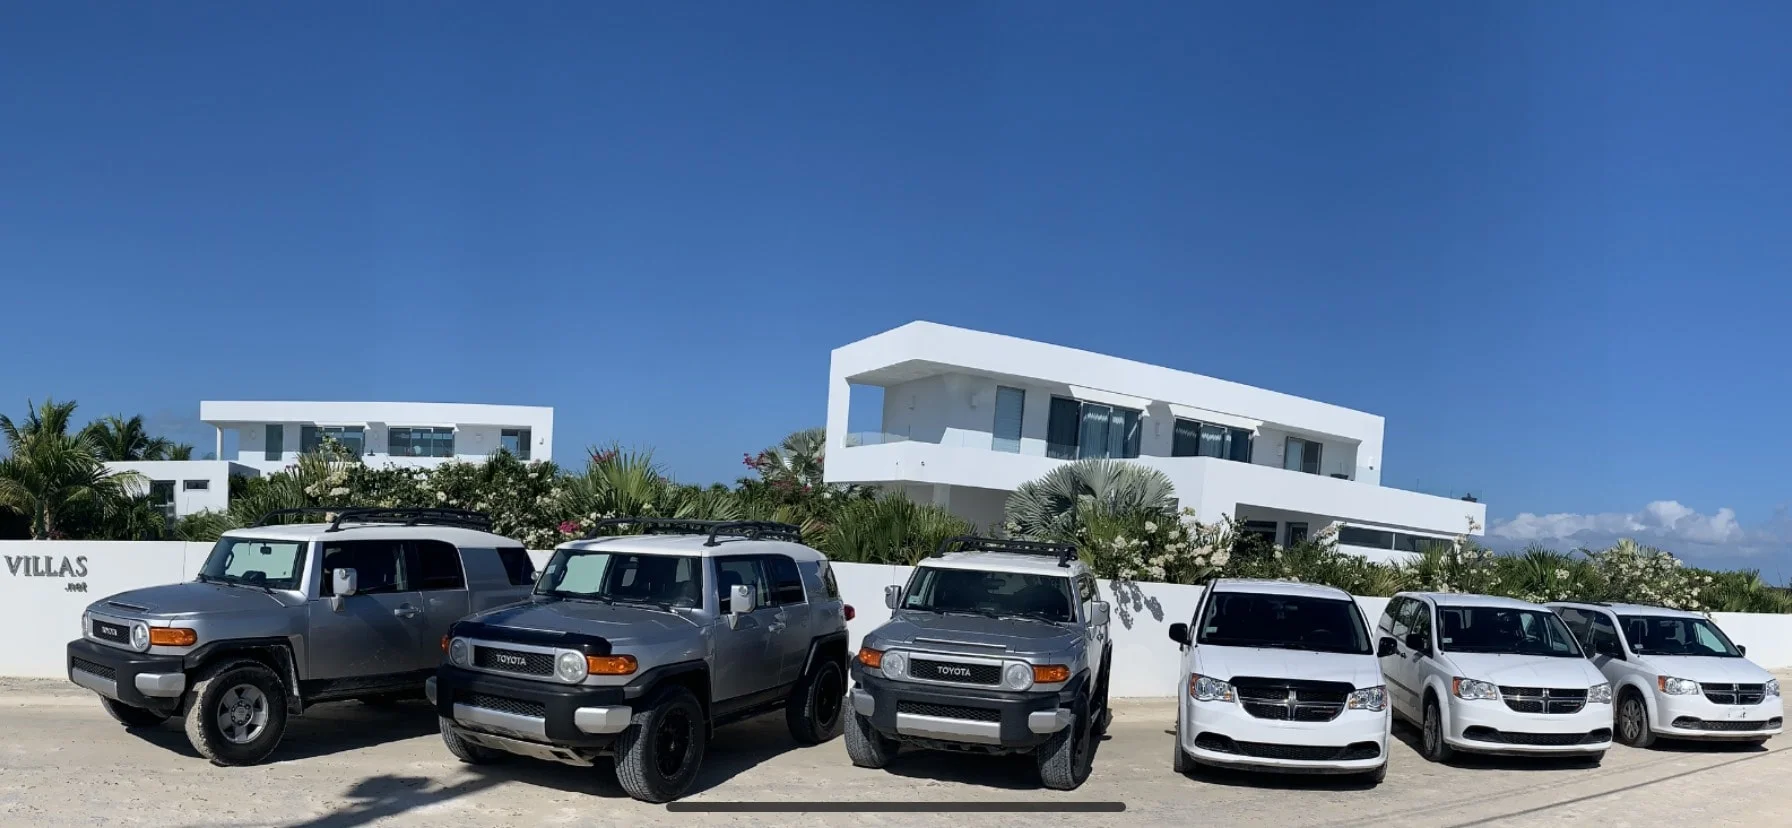 White Villas's vehicles